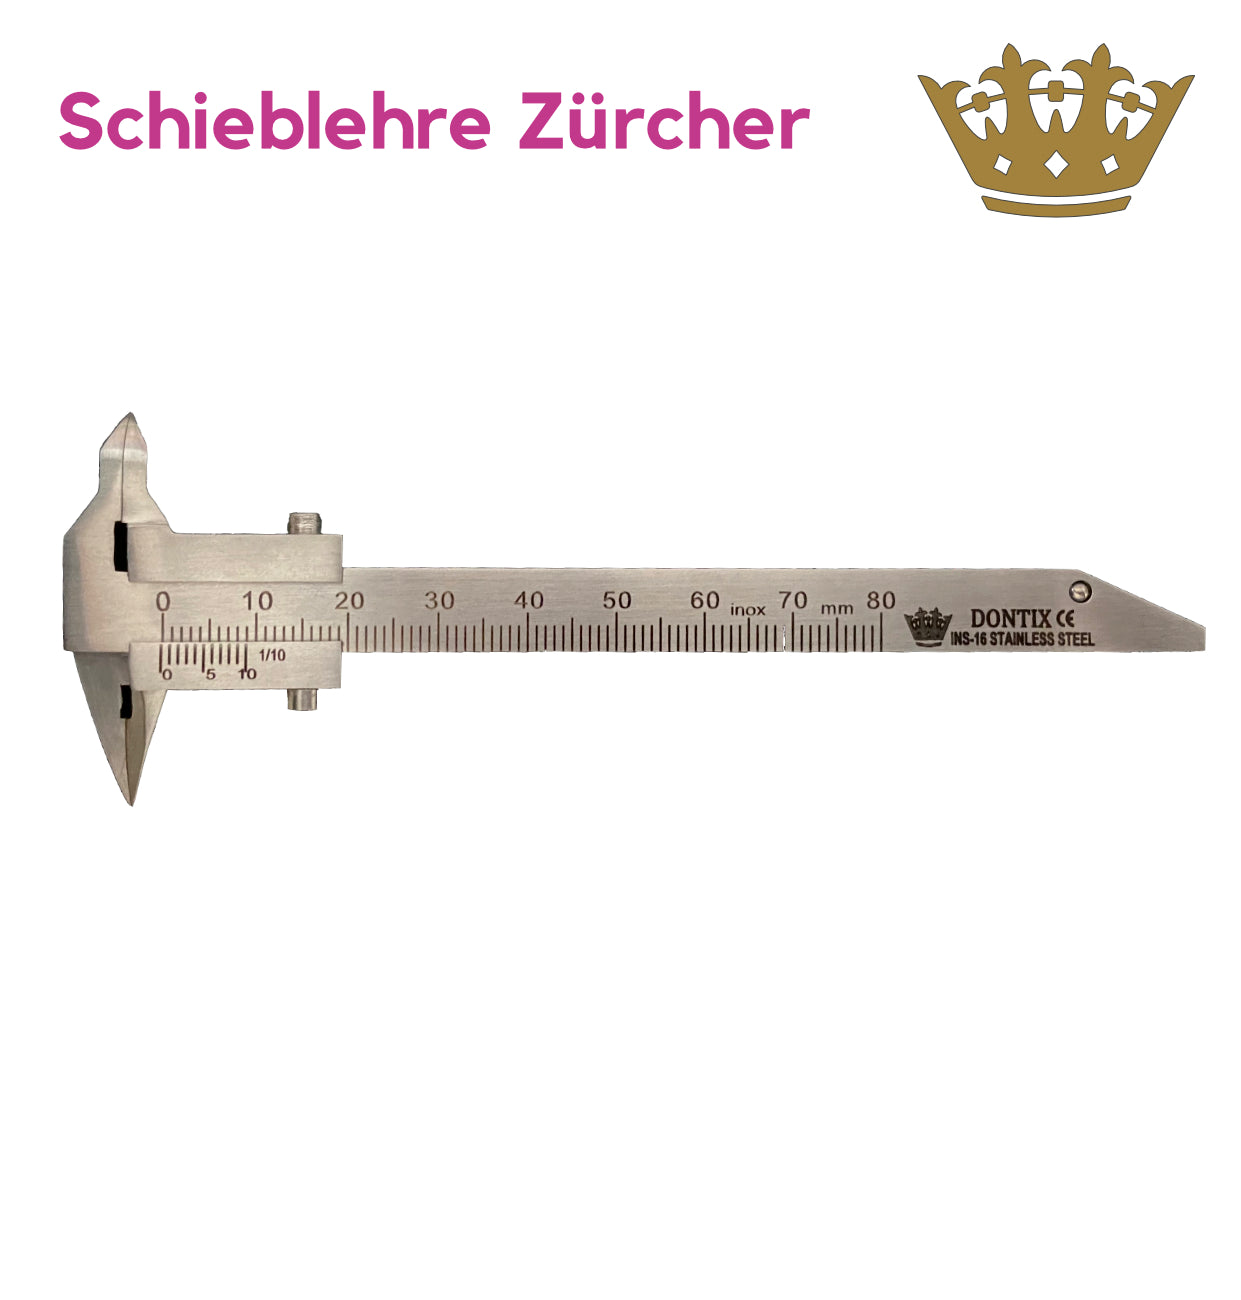 Schieblehre Zürcher – Dontix GmbH